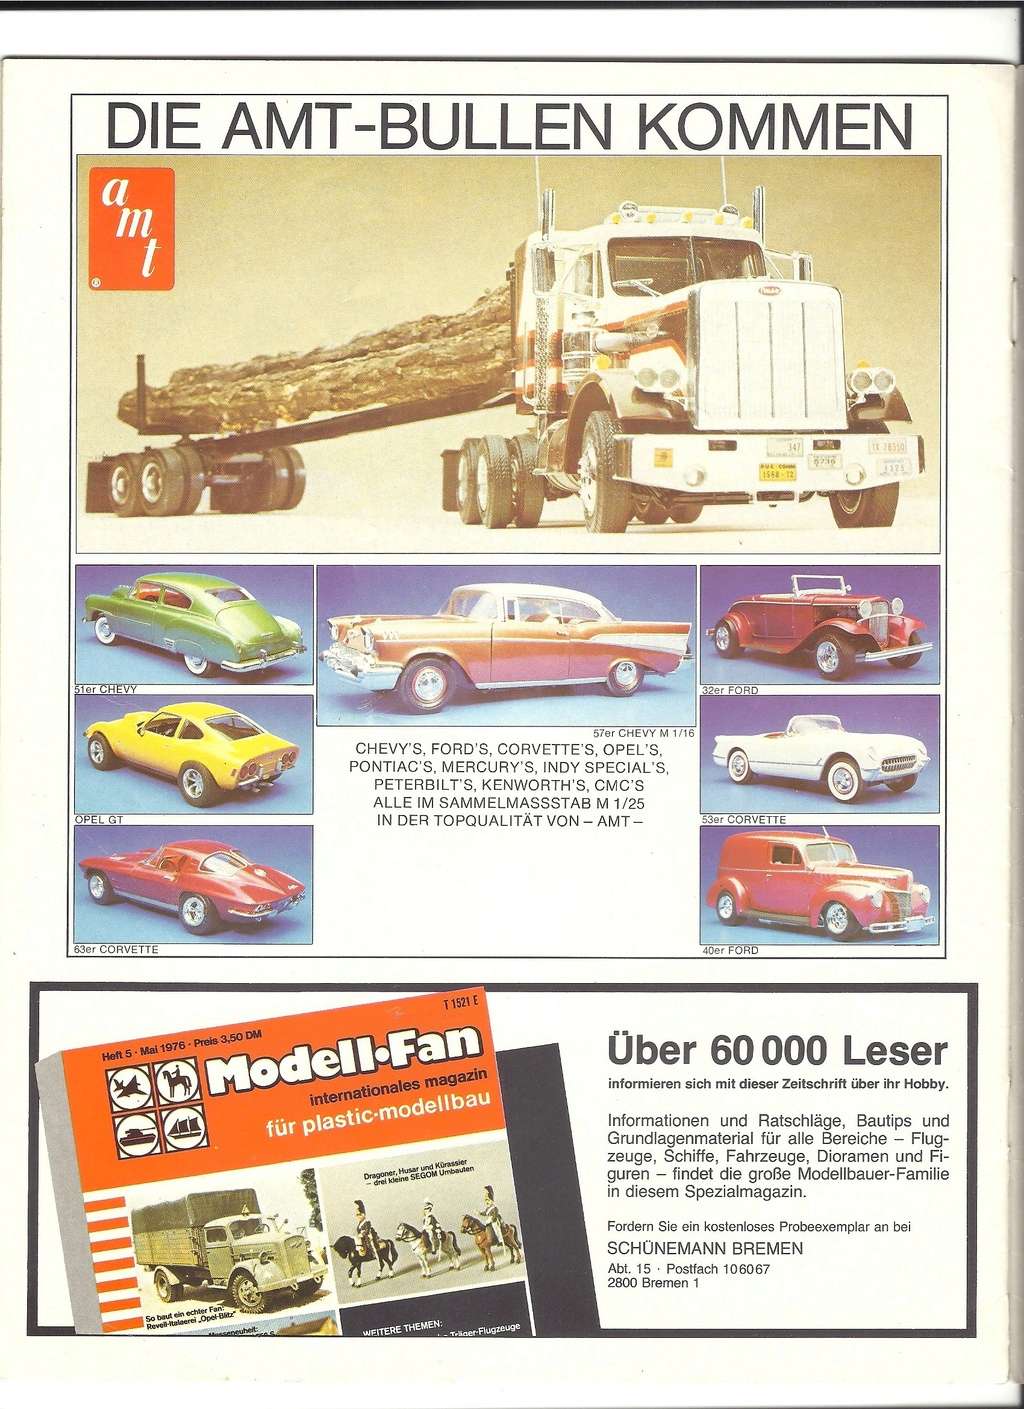 [STAMAX HOBBY AG 1977] Catalogue ENTEX-AMT 1977  Stamax37